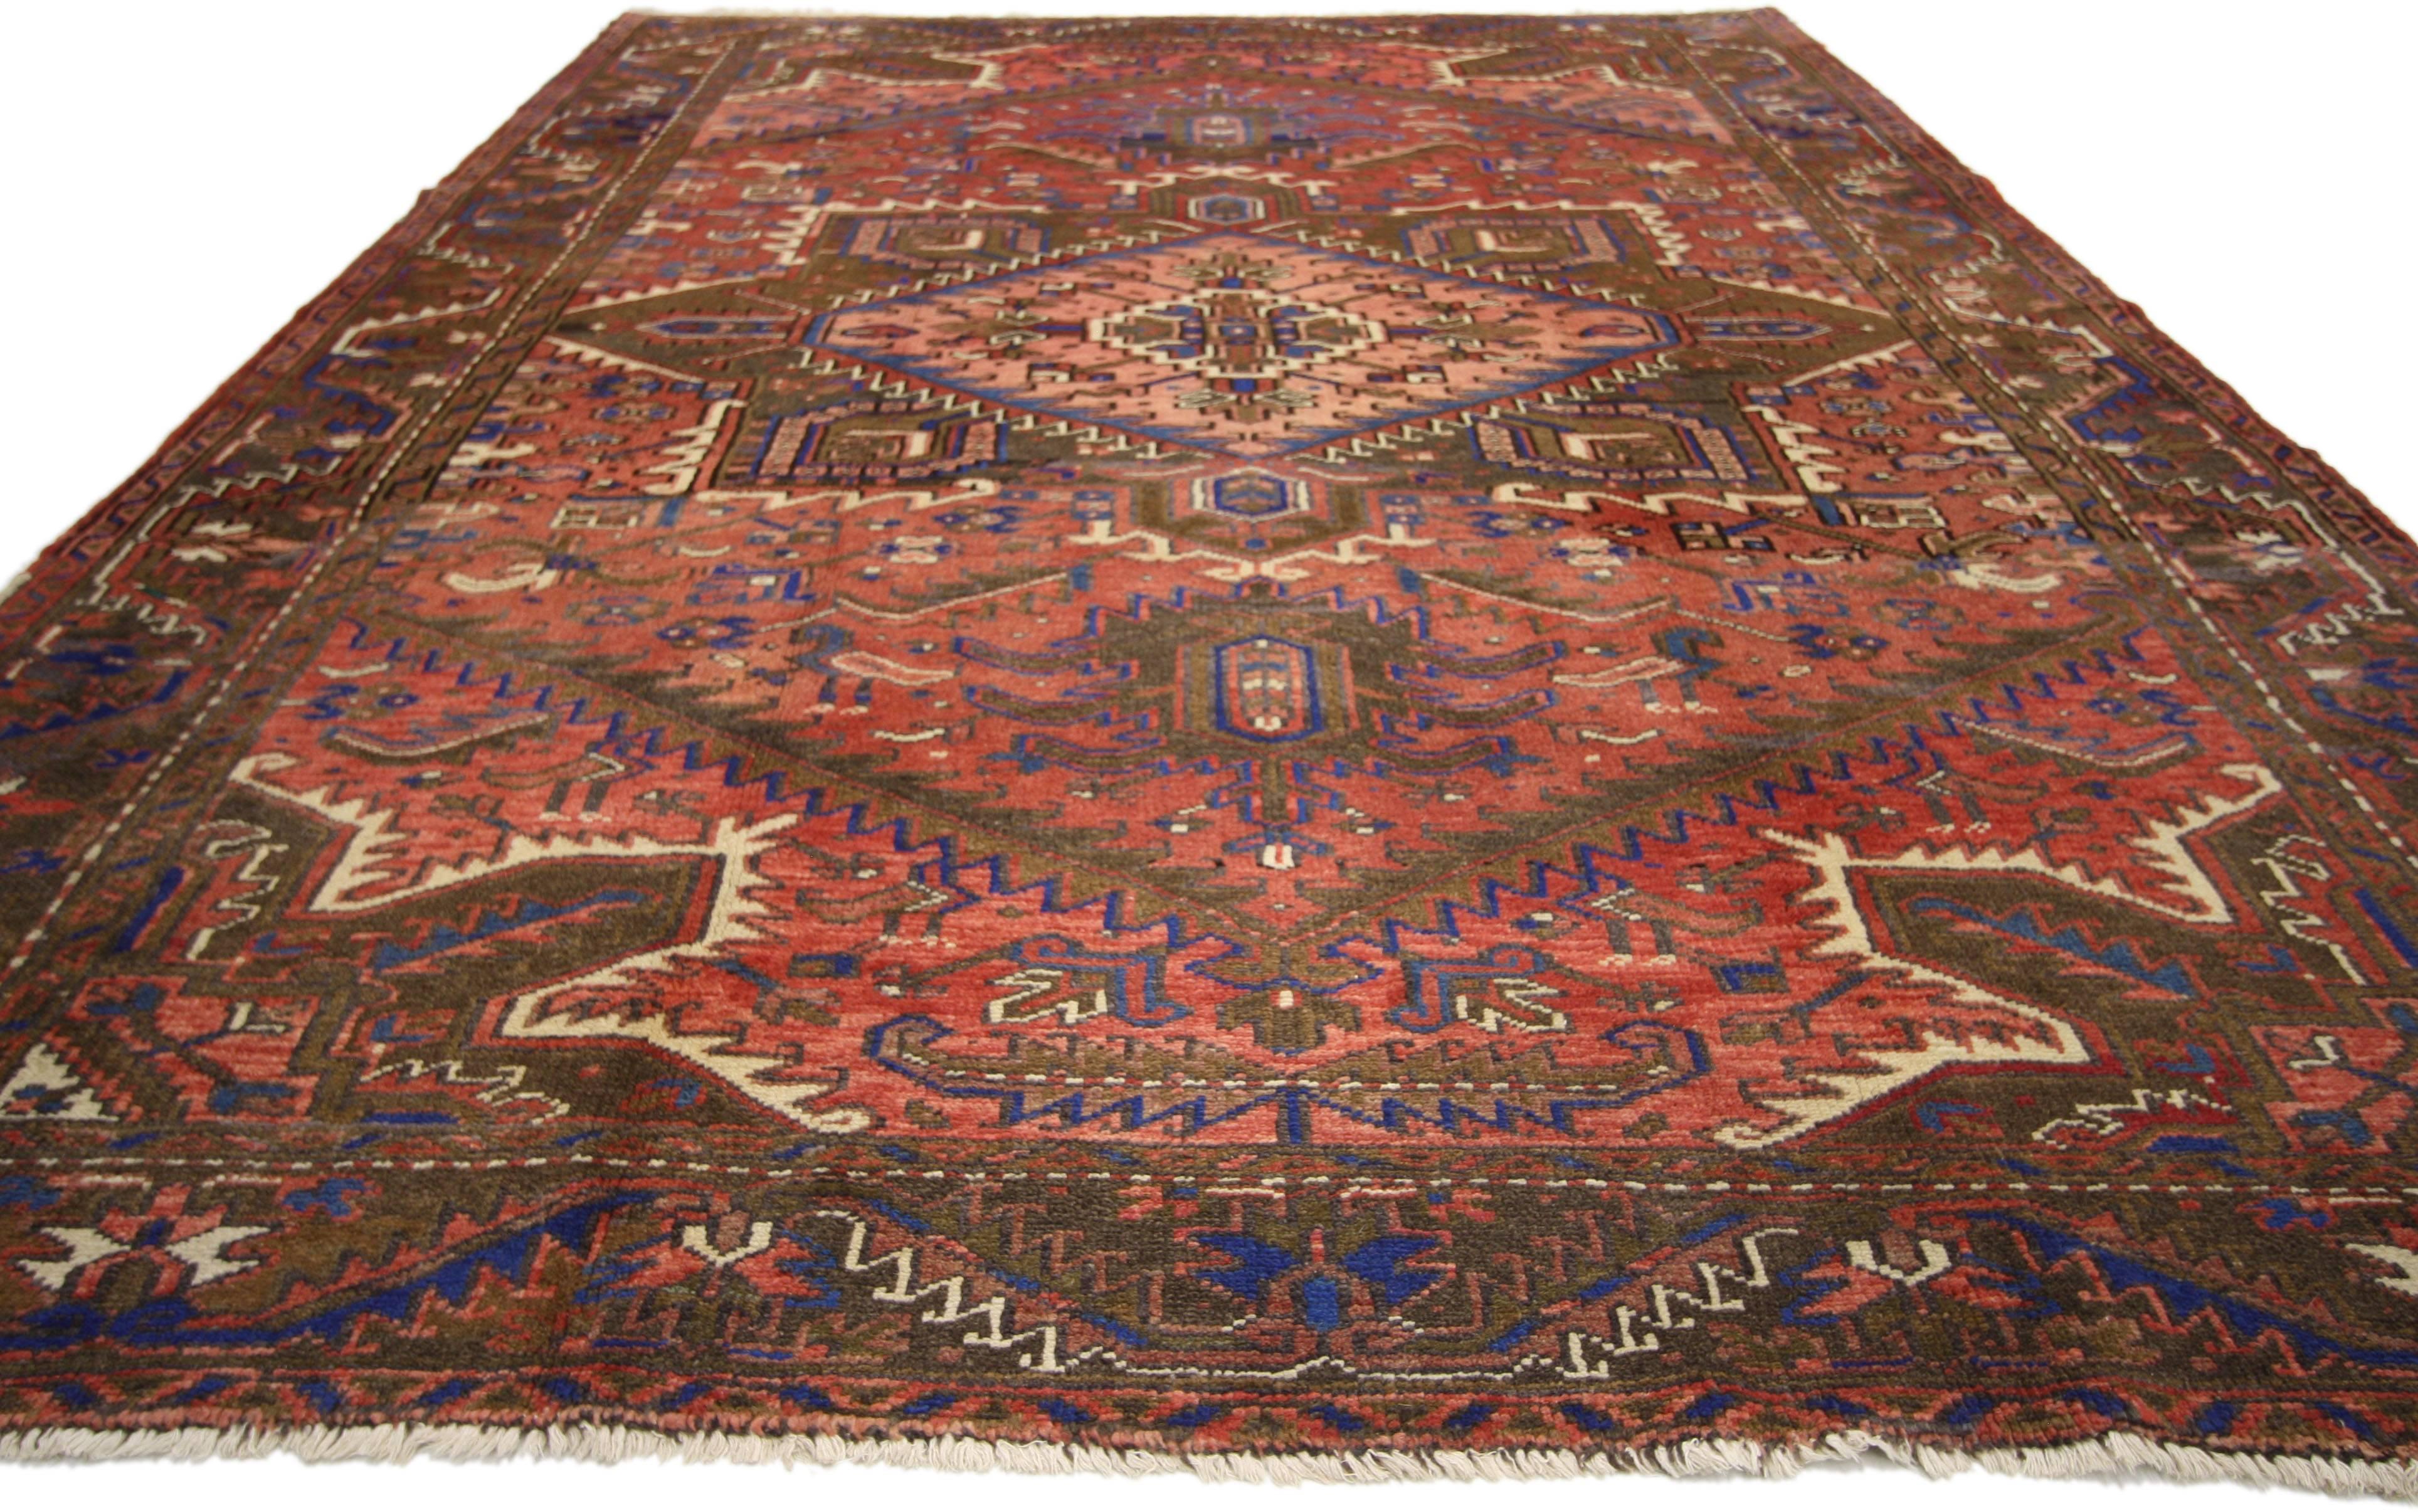 76241, tapis Heriz persan traditionnel vintage avec un style rustique moderne. Ce tapis Heriz vintage en laine nouée à la main présente un grand médaillon octofoil dentelé avec des pendentifs en forme de palmettes flottant au centre d'un champ rouge